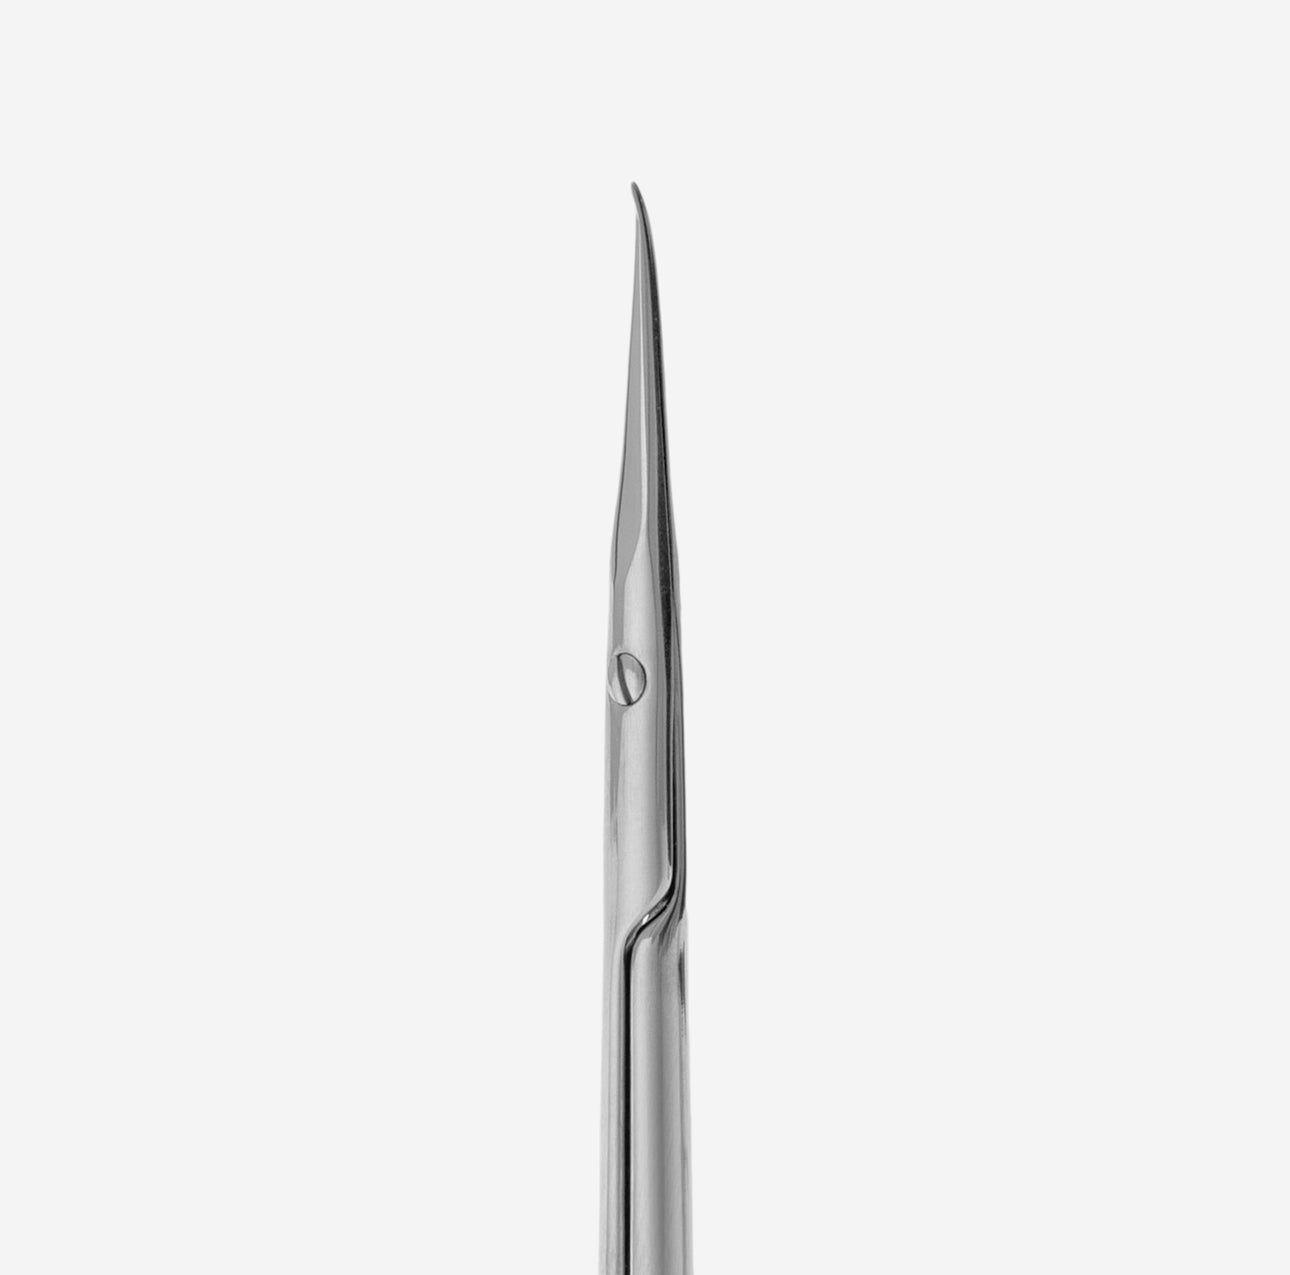 Professional cuticle scissors EXPERT 51 TYPE 3